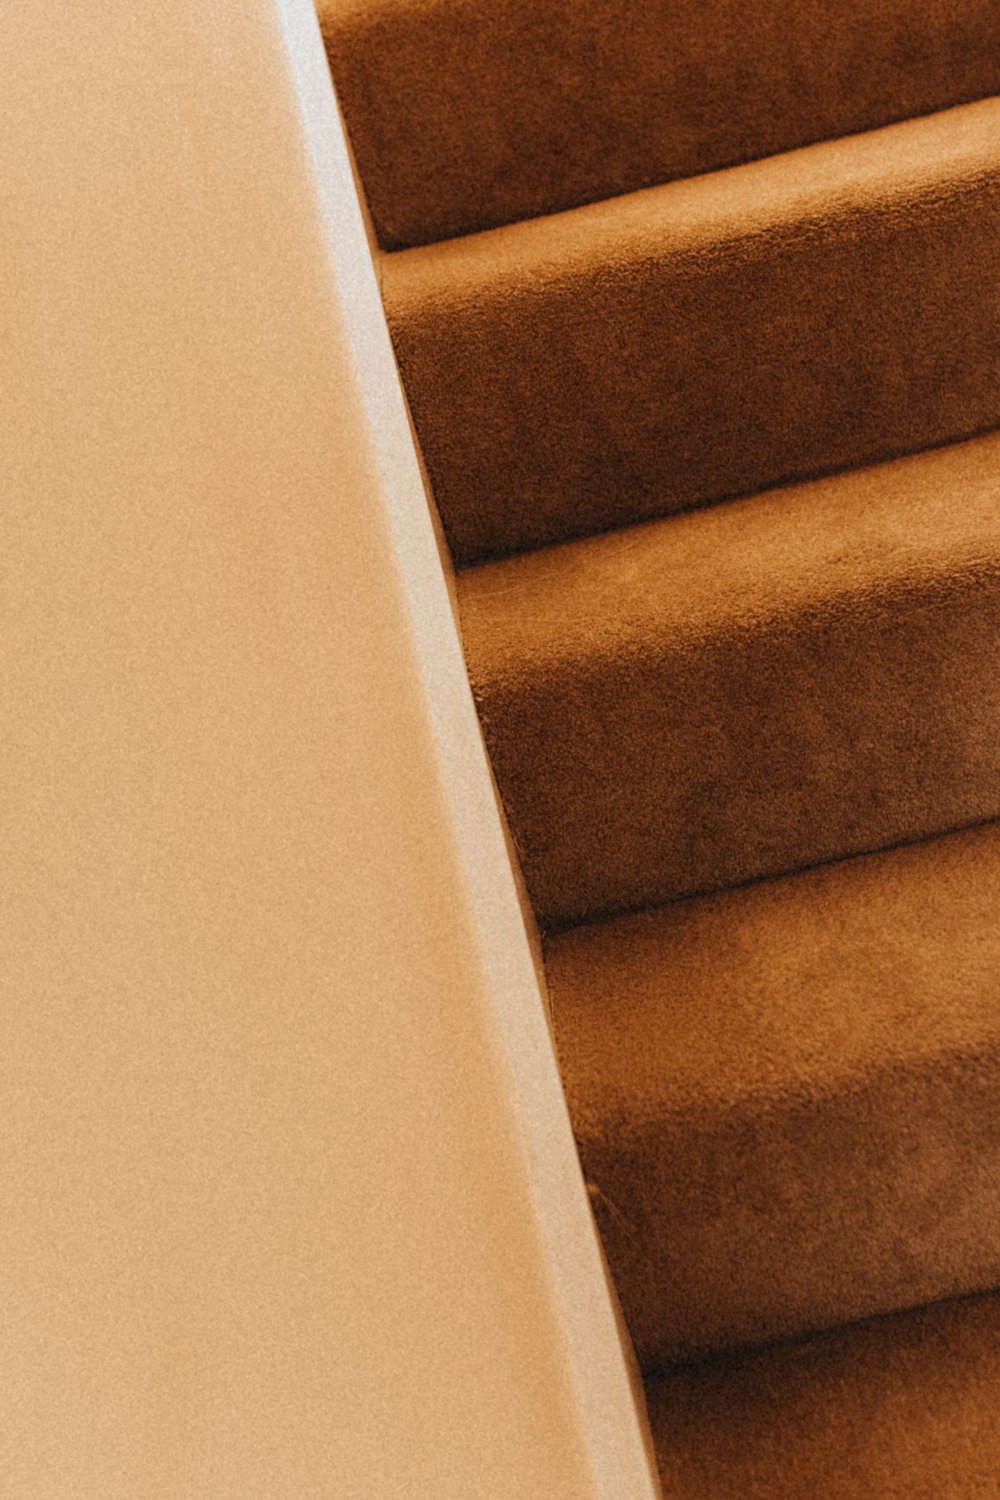 Escada marrom com parede branca